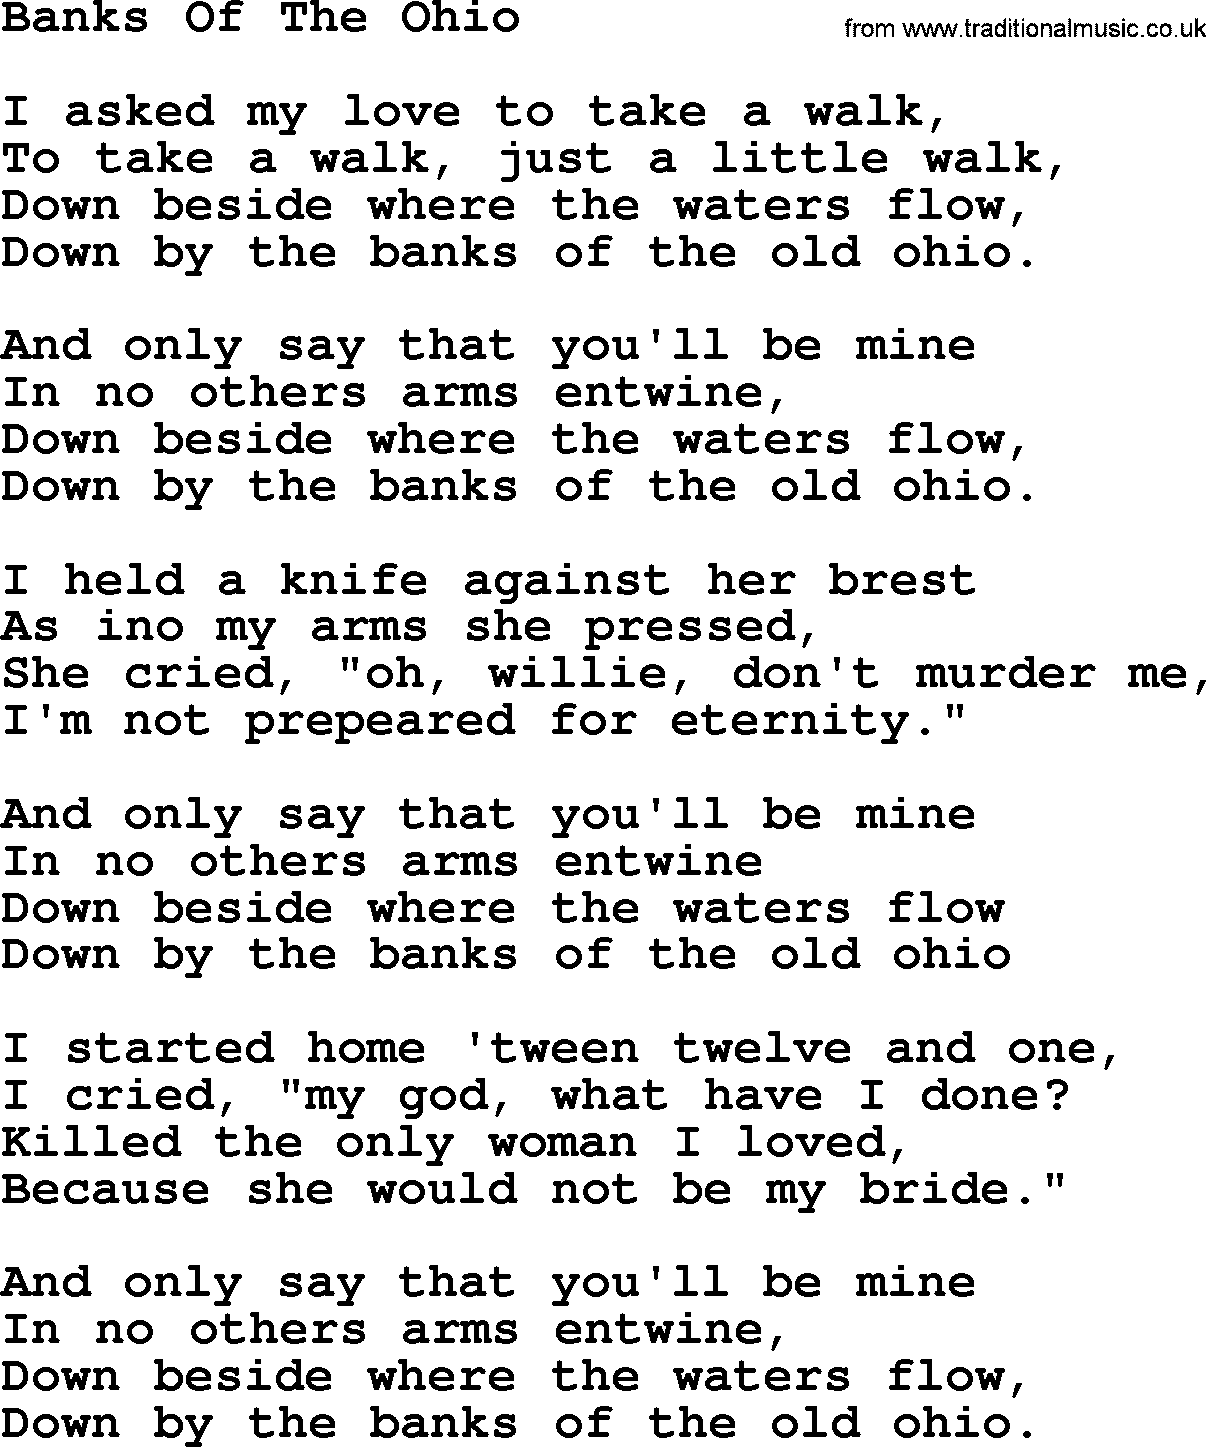 Joan Baez song Banks Of The Ohio, lyrics